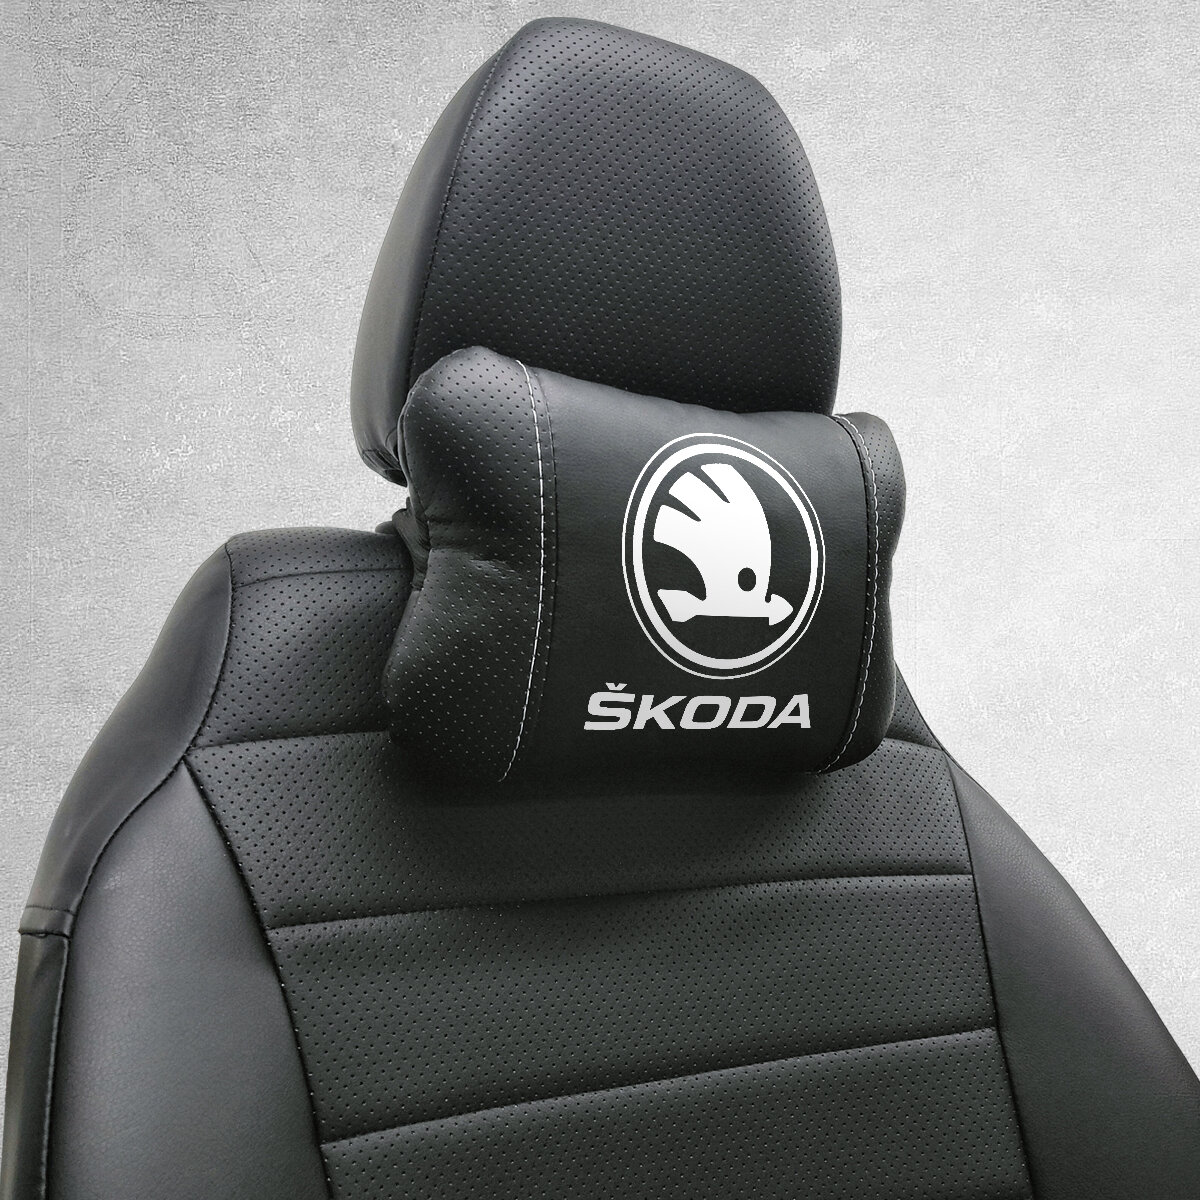 Автомобильная подушка под шею на подголовник эмблема Skoda, для Шкоды. Подушка для шеи в машину. Подушка на сиденье автомобиля.